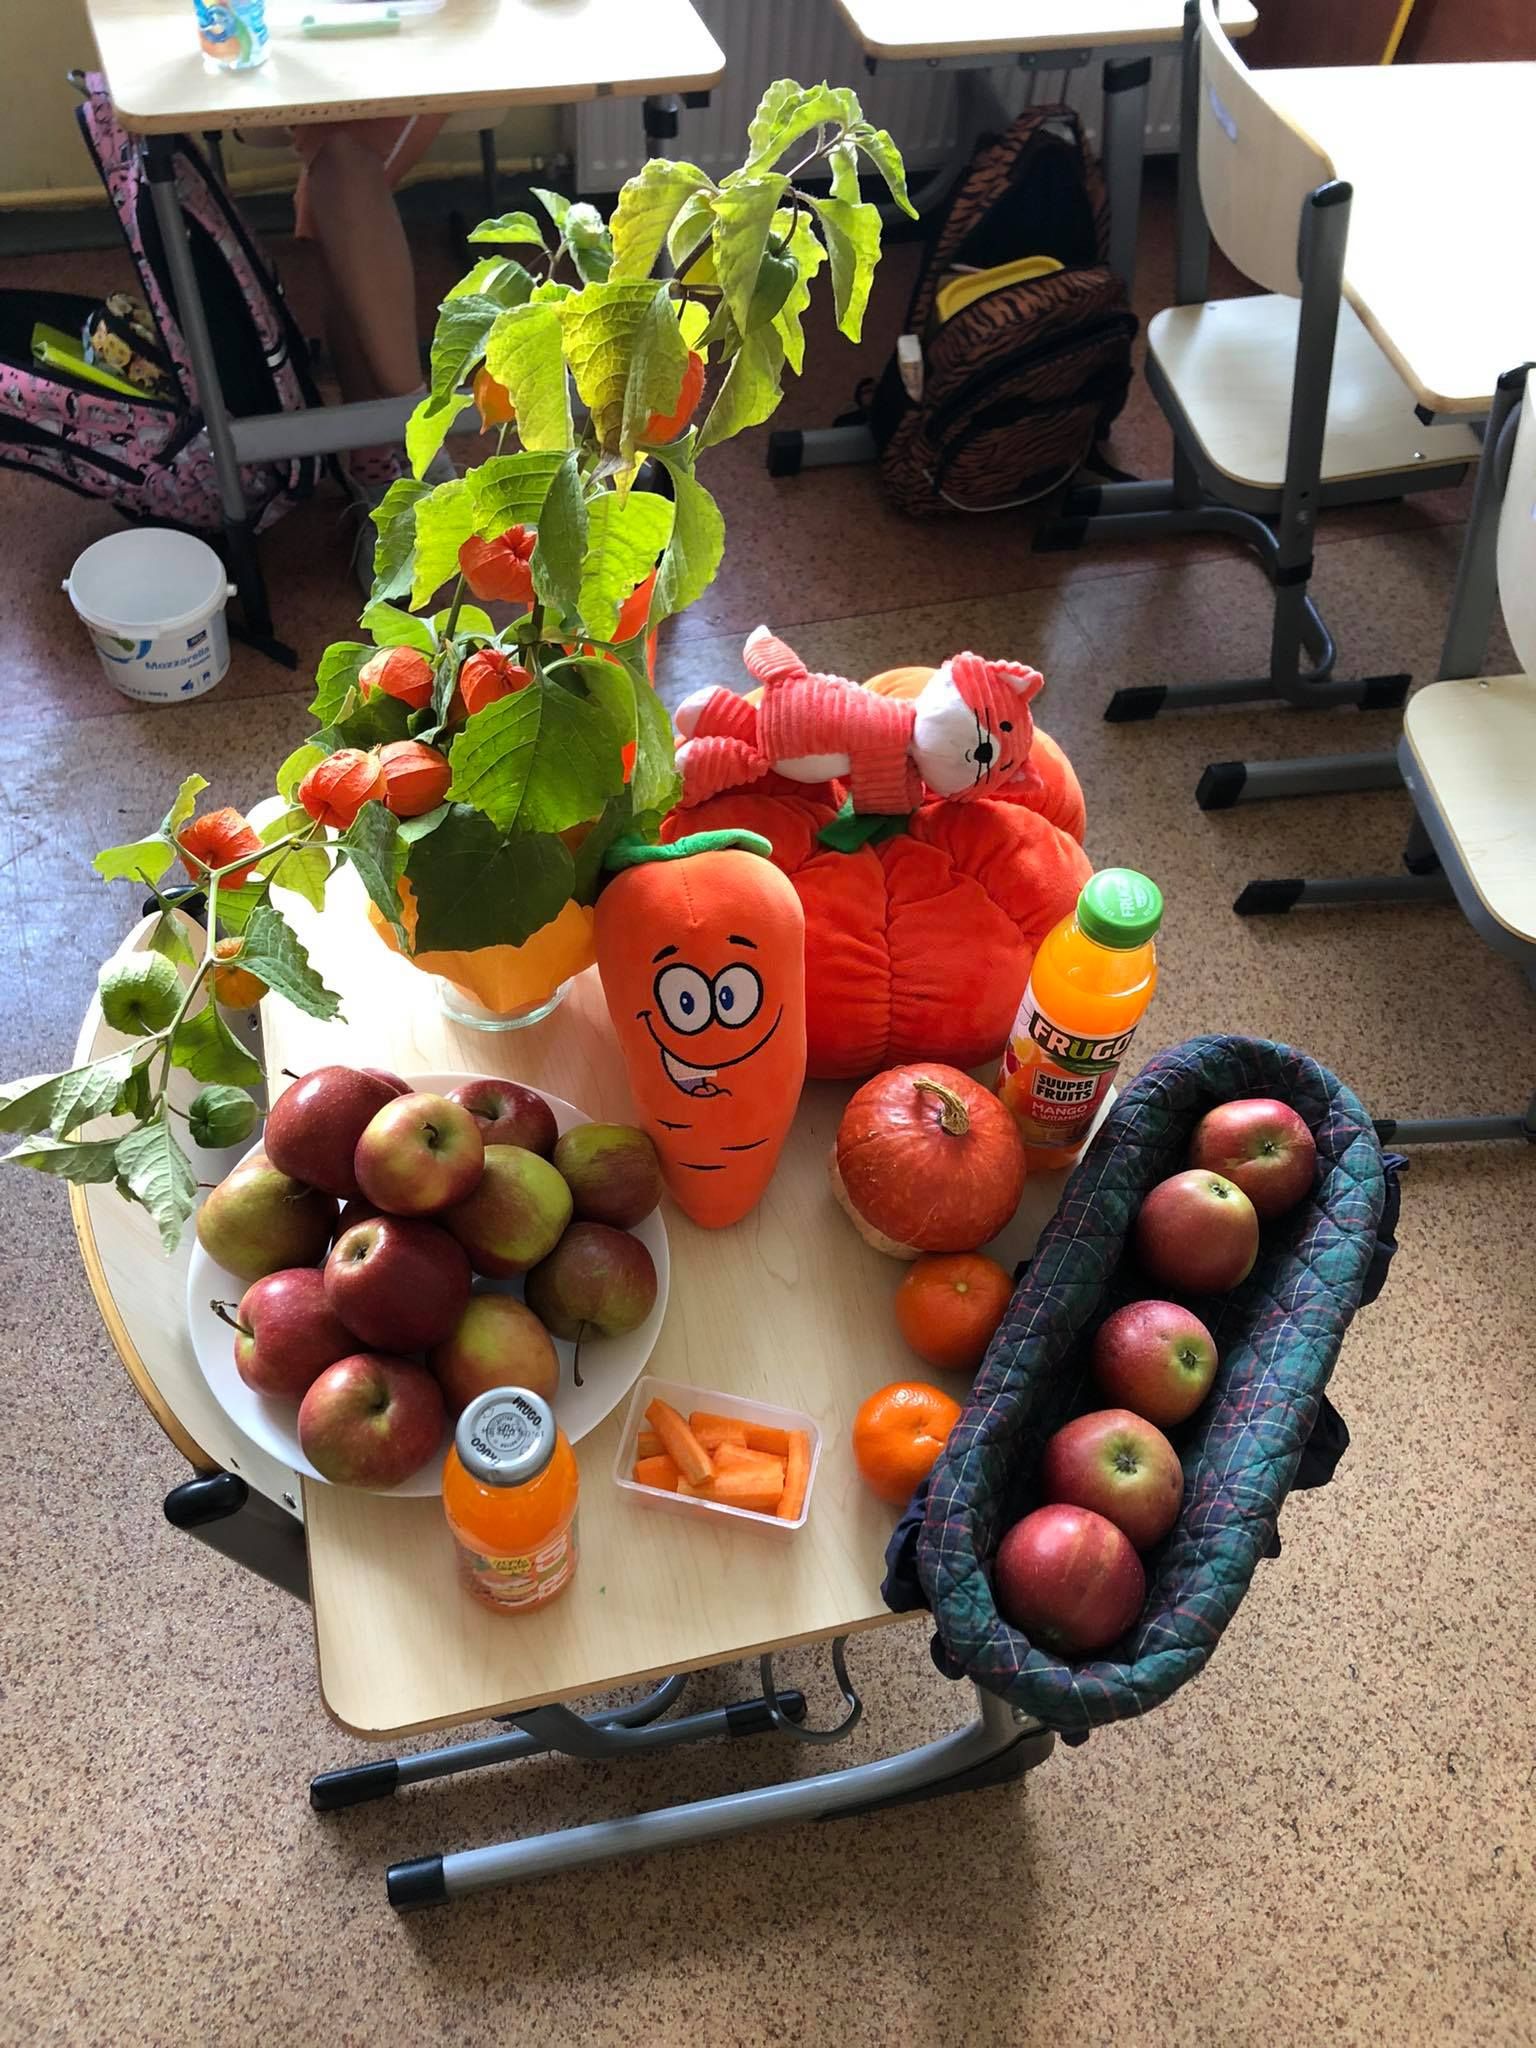 Zdjęcie przedstawia jabłka i i zdrowe produkty w kolorze pomarańczowym ułożone na stoliku.